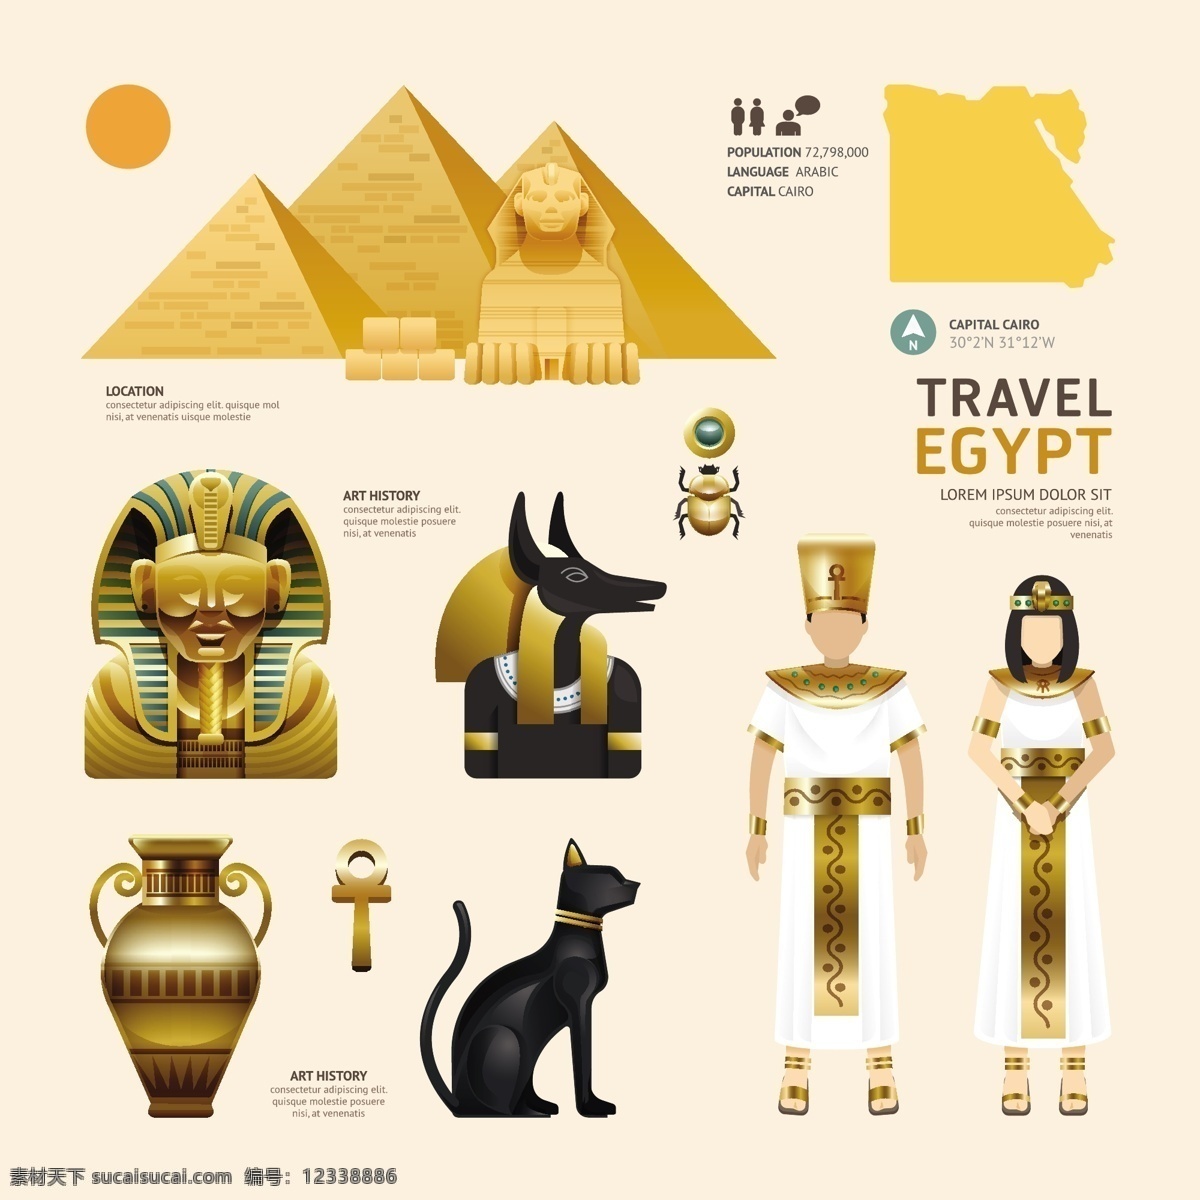 埃及文化元素 金字塔 狮身人面像 甲壳虫猫 法老 罐子 瓷器 埃及旅游 旅行 旅游景点 著名景点 旅游图标 eps格式 底纹边框 背景底纹